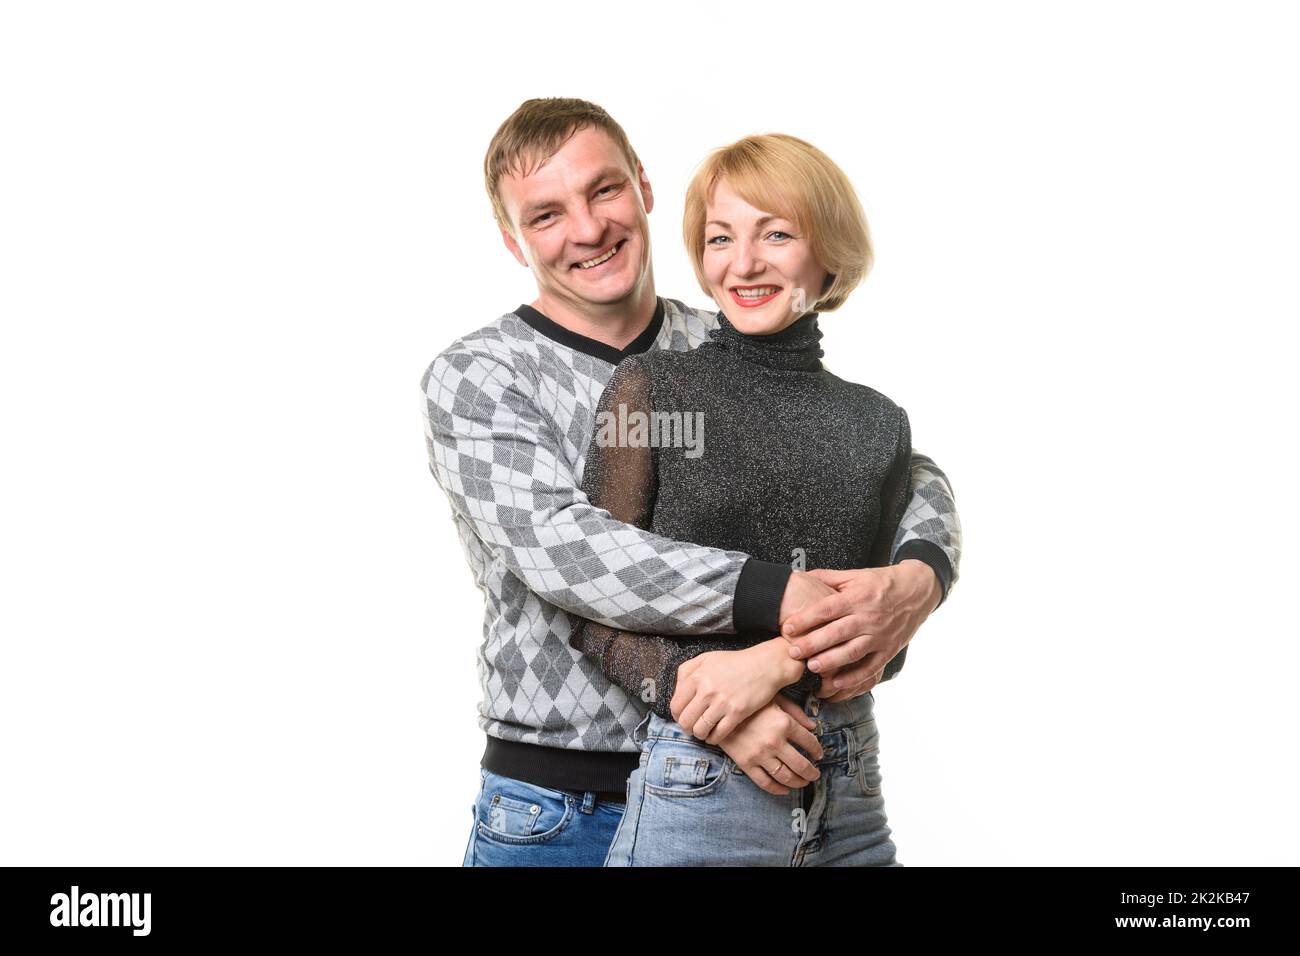 Ritratto di coppia sorridente in abiti casual, isolato su sfondo bianco Foto Stock